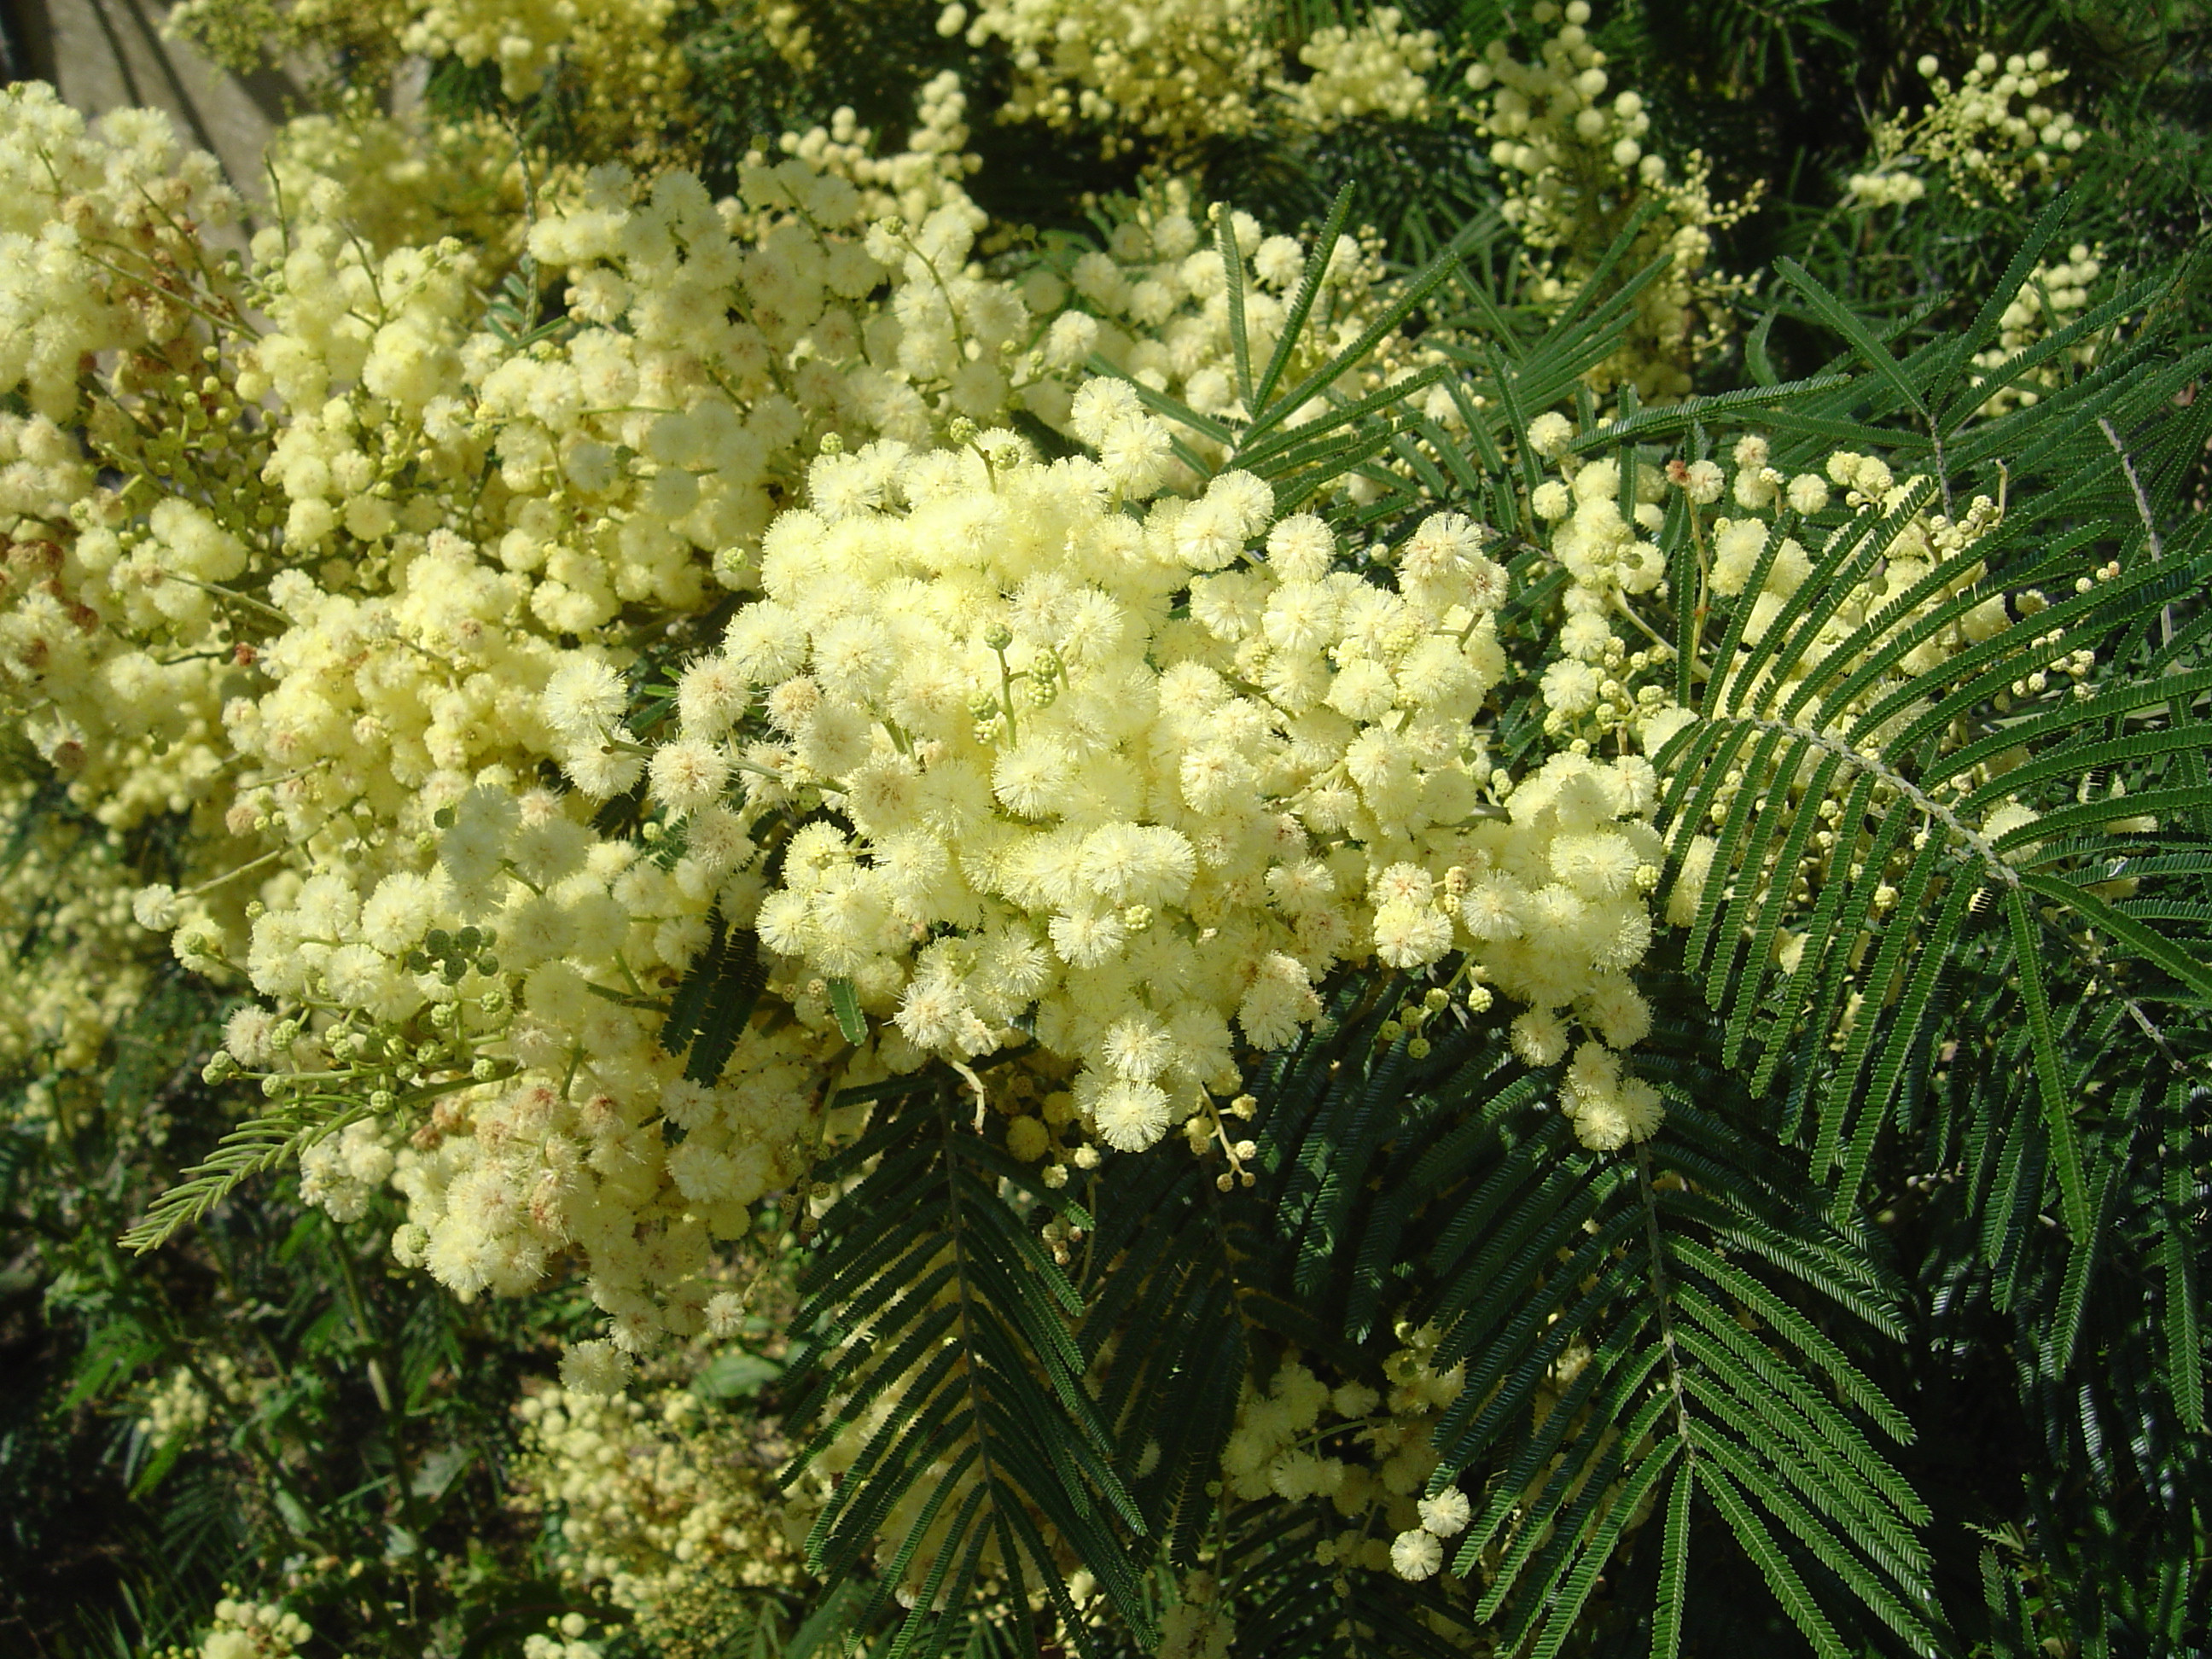 Acacia mearnsii 'Aestivalis'